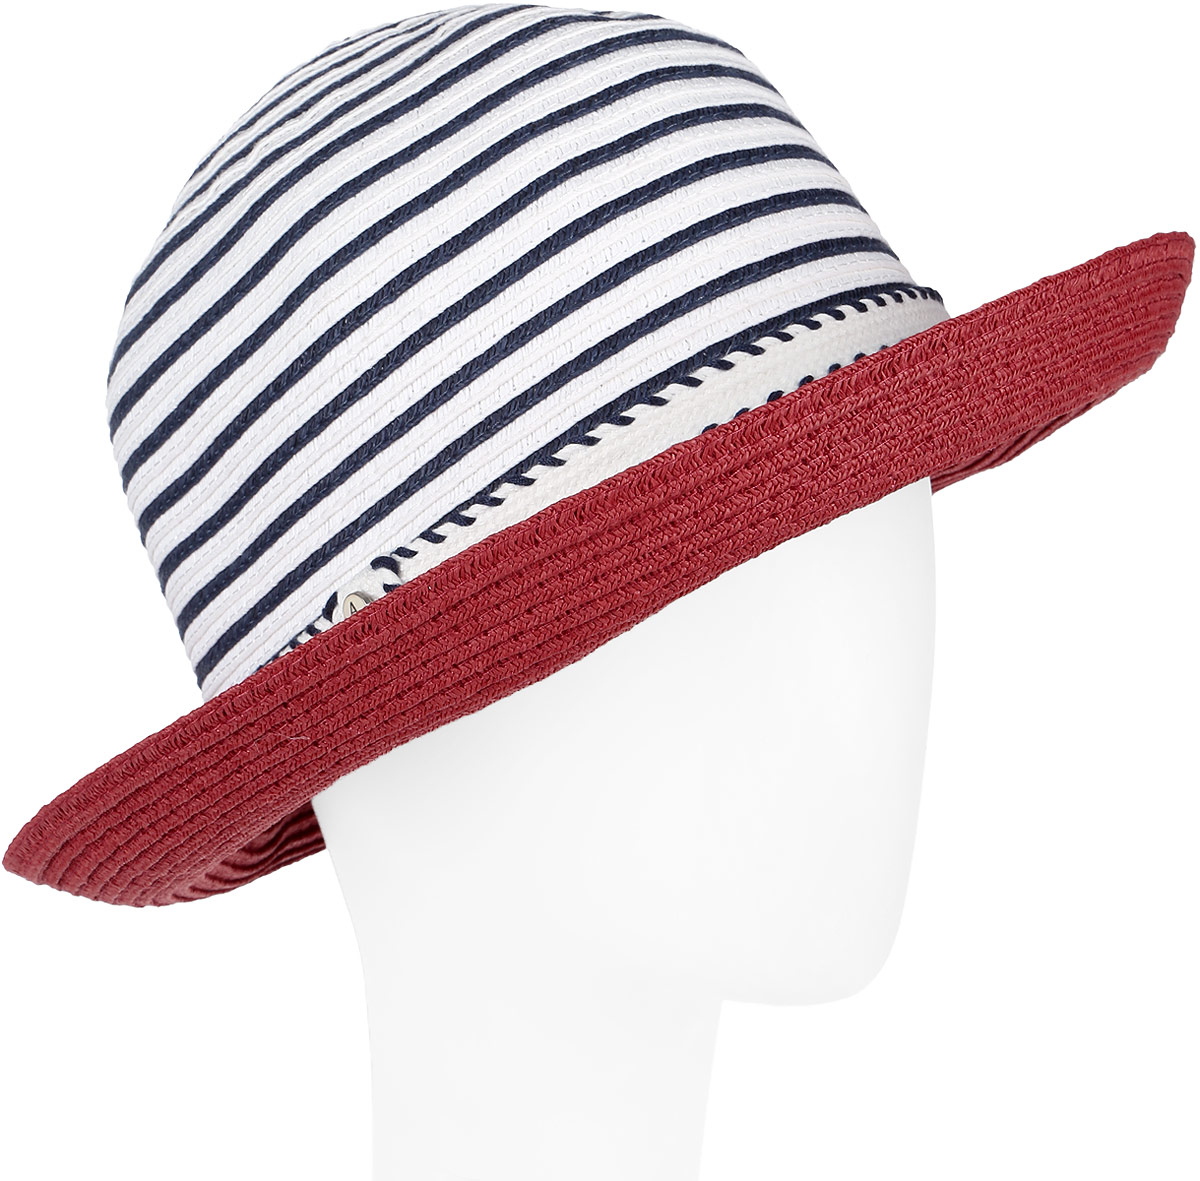 Шляпа женская Avanta, цвет: красный, белый, синий. 991950. Размер 55/56